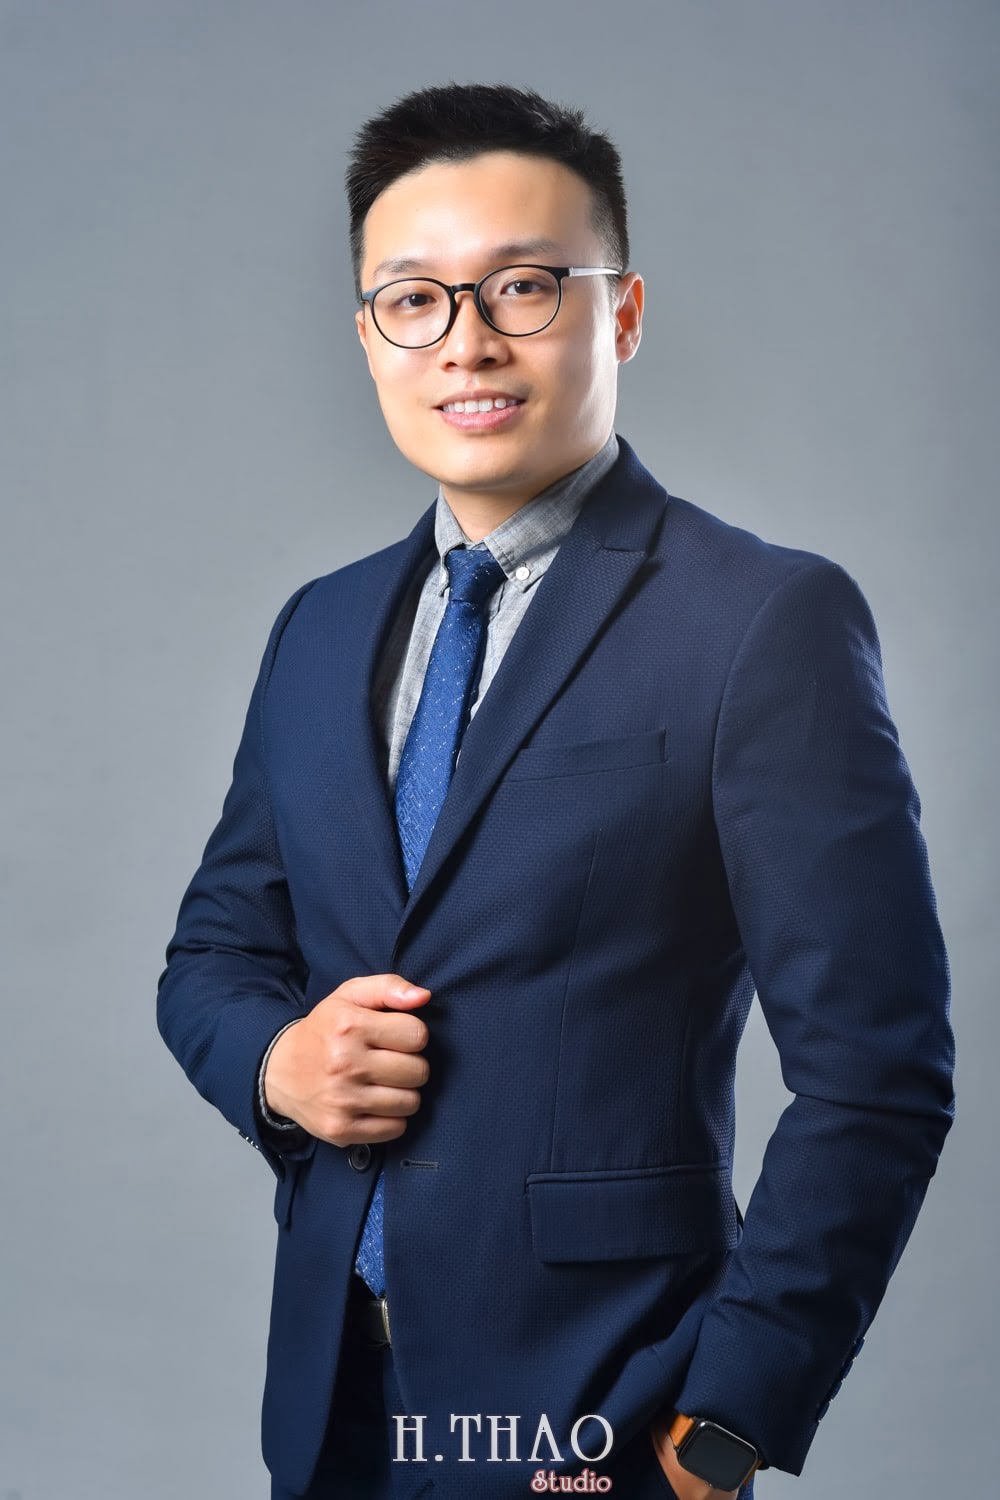 Anh profile  8 min - Tổng hợp ảnh profile nghề nghiệp bác sĩ, ngân hàng đẹp- HThao Studio